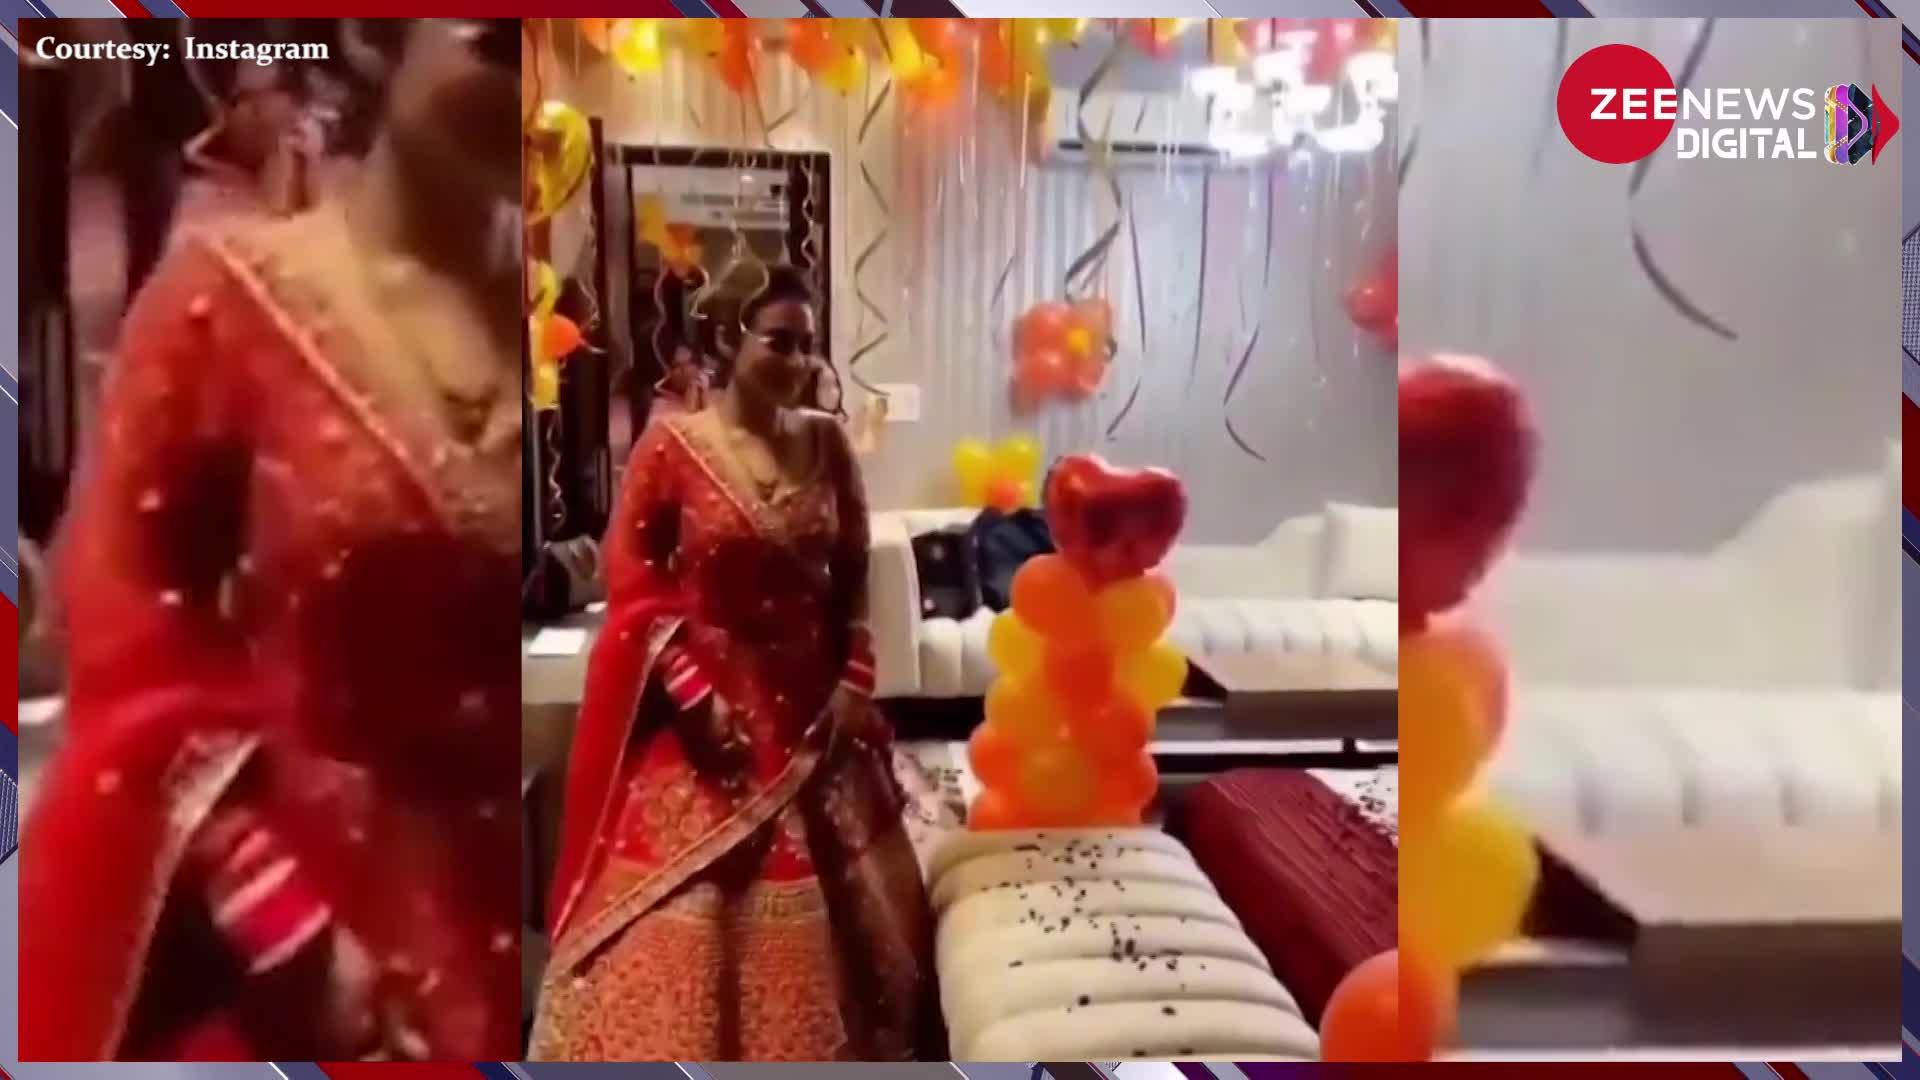 Wedding Video: शादी के बाद ससुराल में दुल्हन का हुआ अनोखा स्वागत, अपने कमरे में एन्ट्री मारते ही चौंक पड़ी दुल्हन !